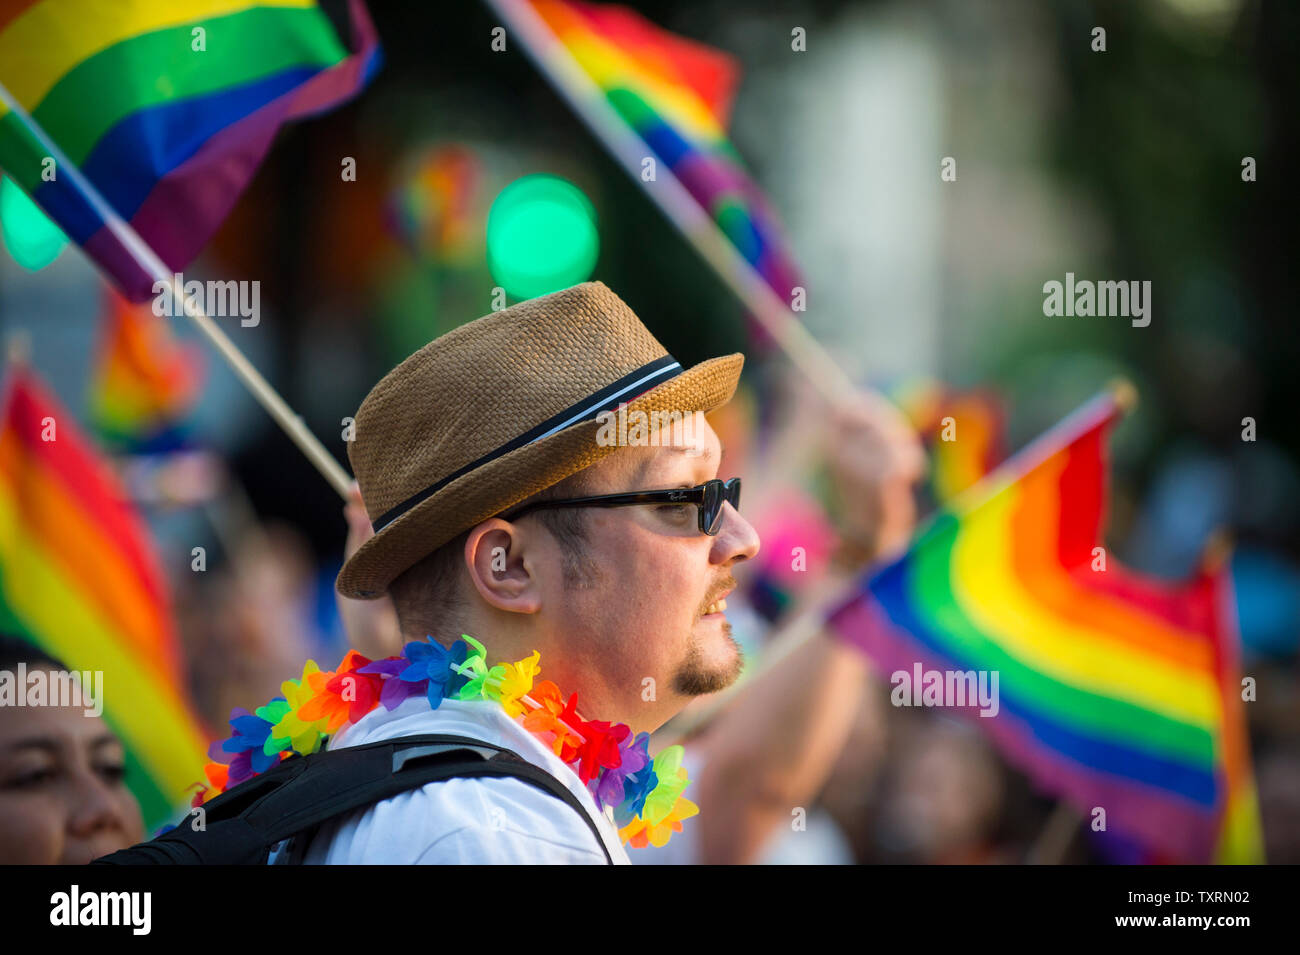 Man At Gay Pride Parade Banque d'image et photos - Page 10 - Alamy